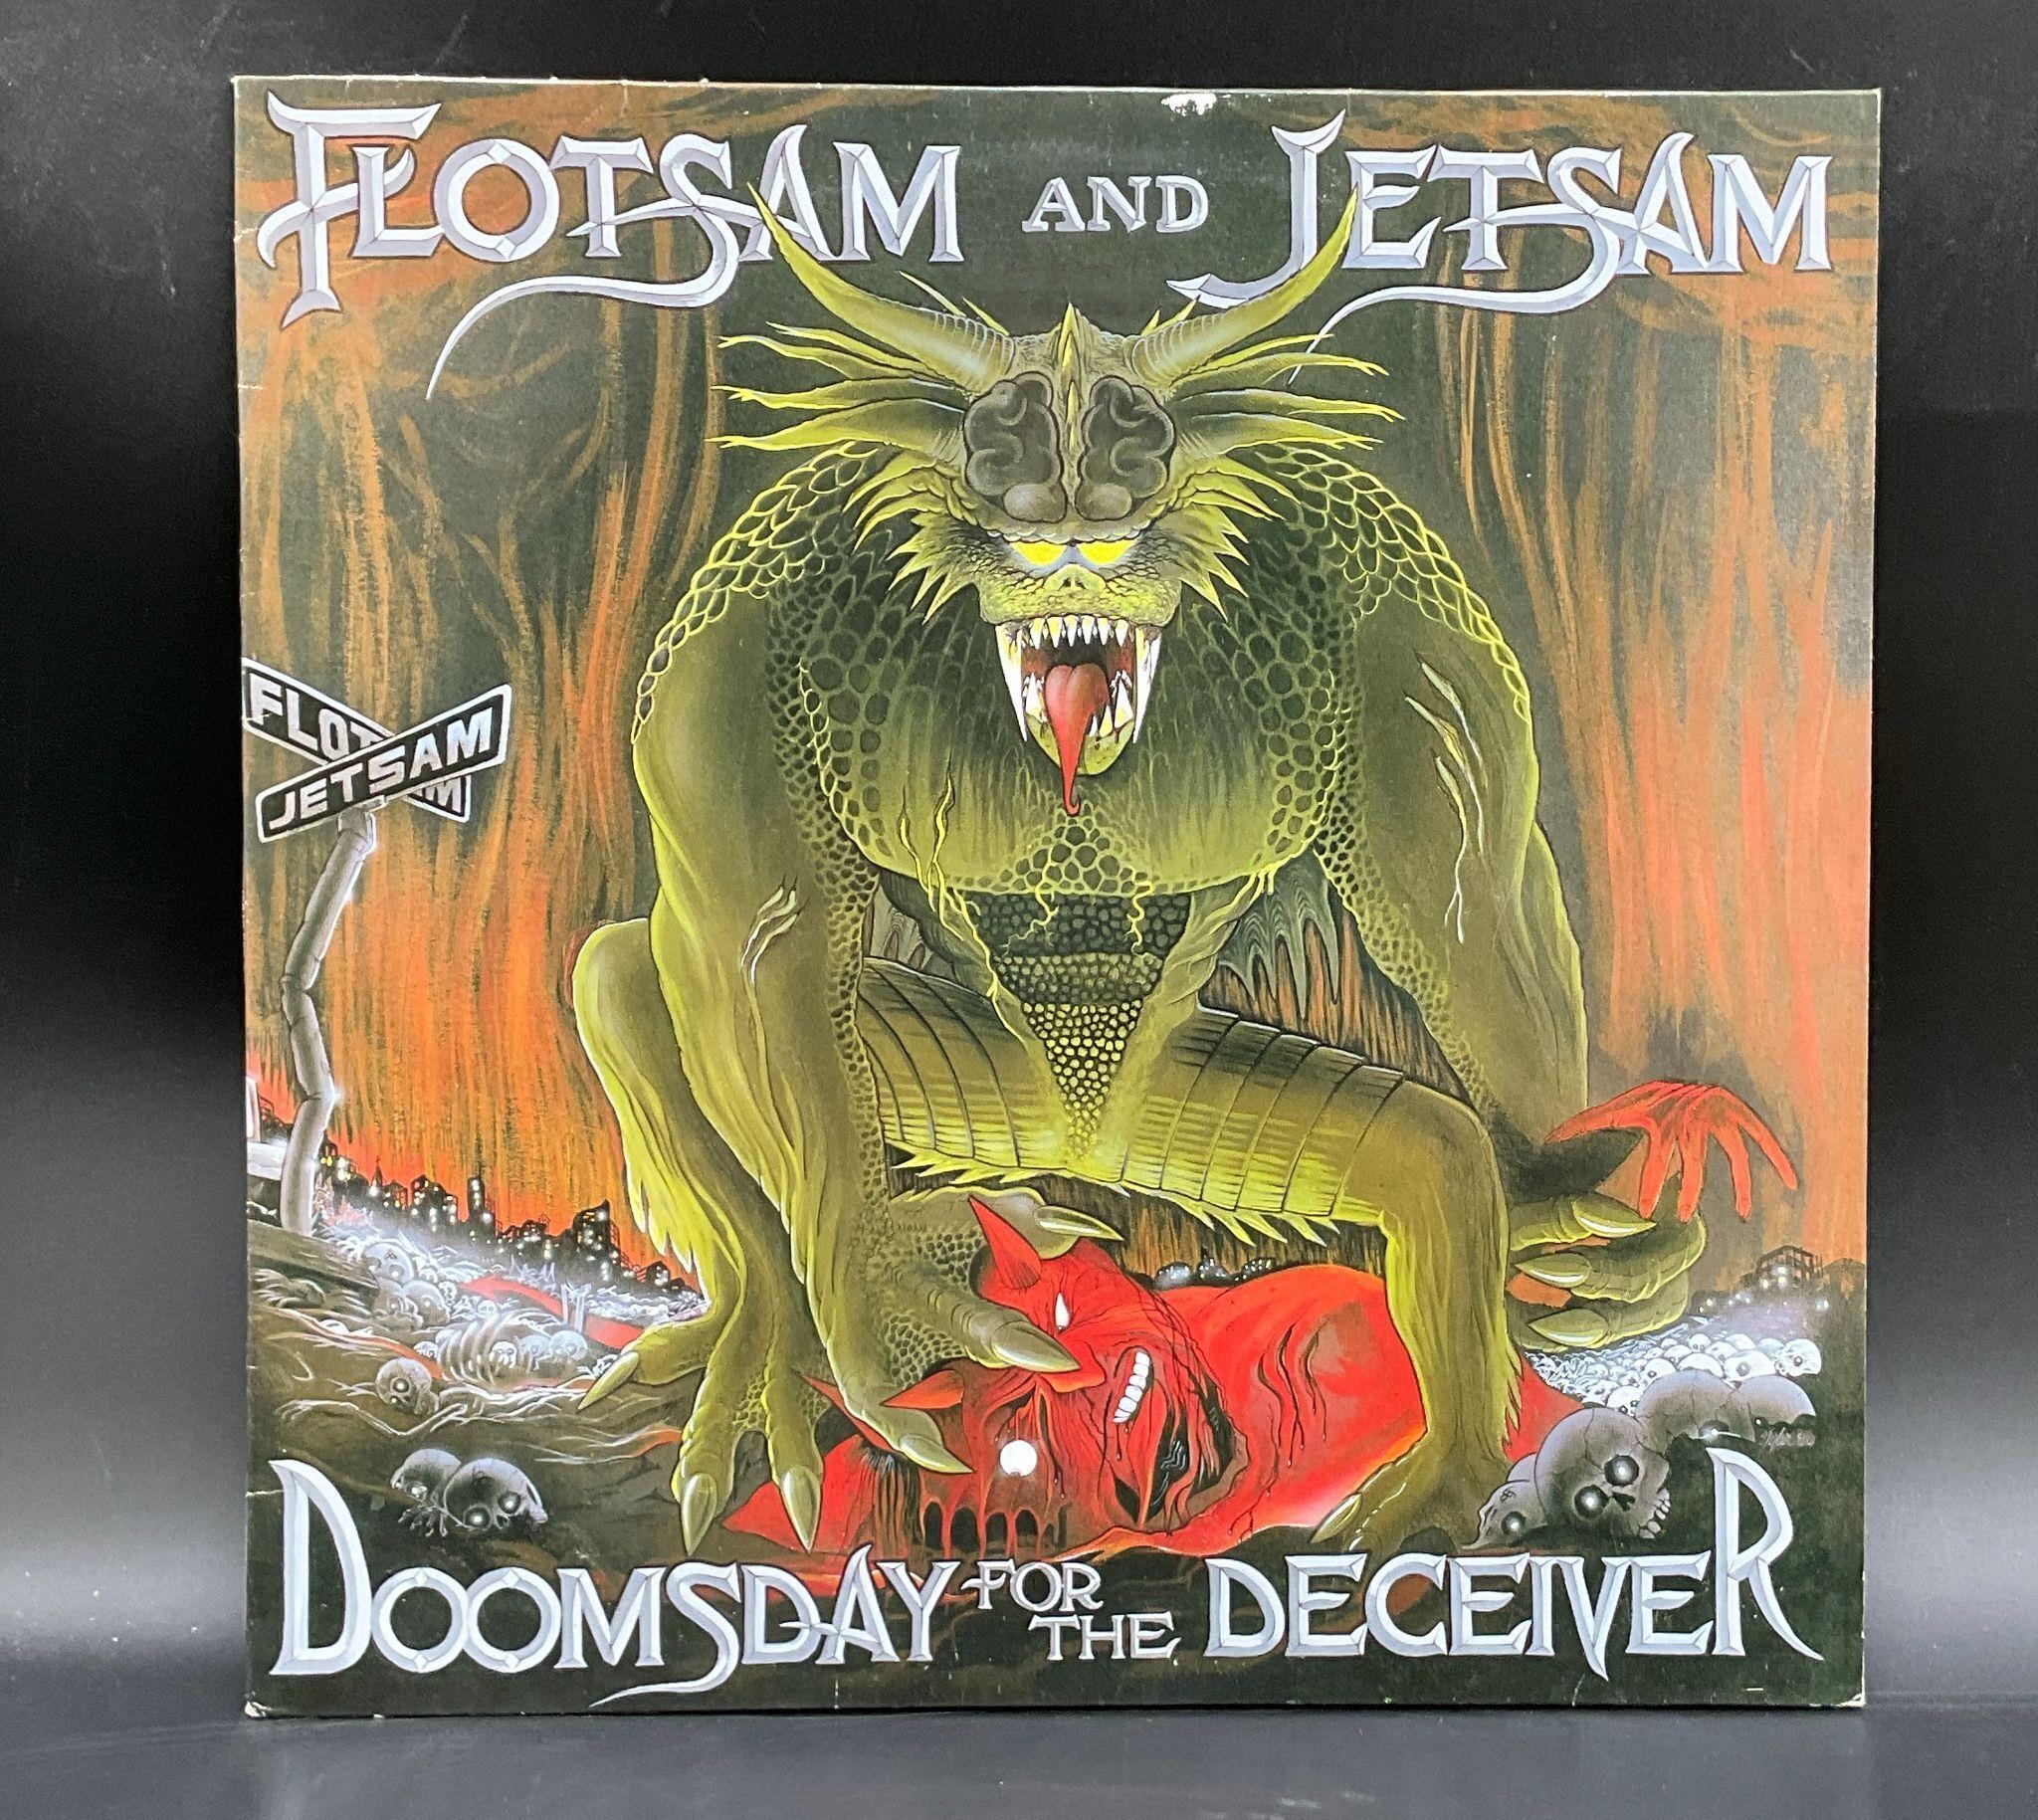 1986 Flotsam & Jetsam "Doomsday For The Deceiver"